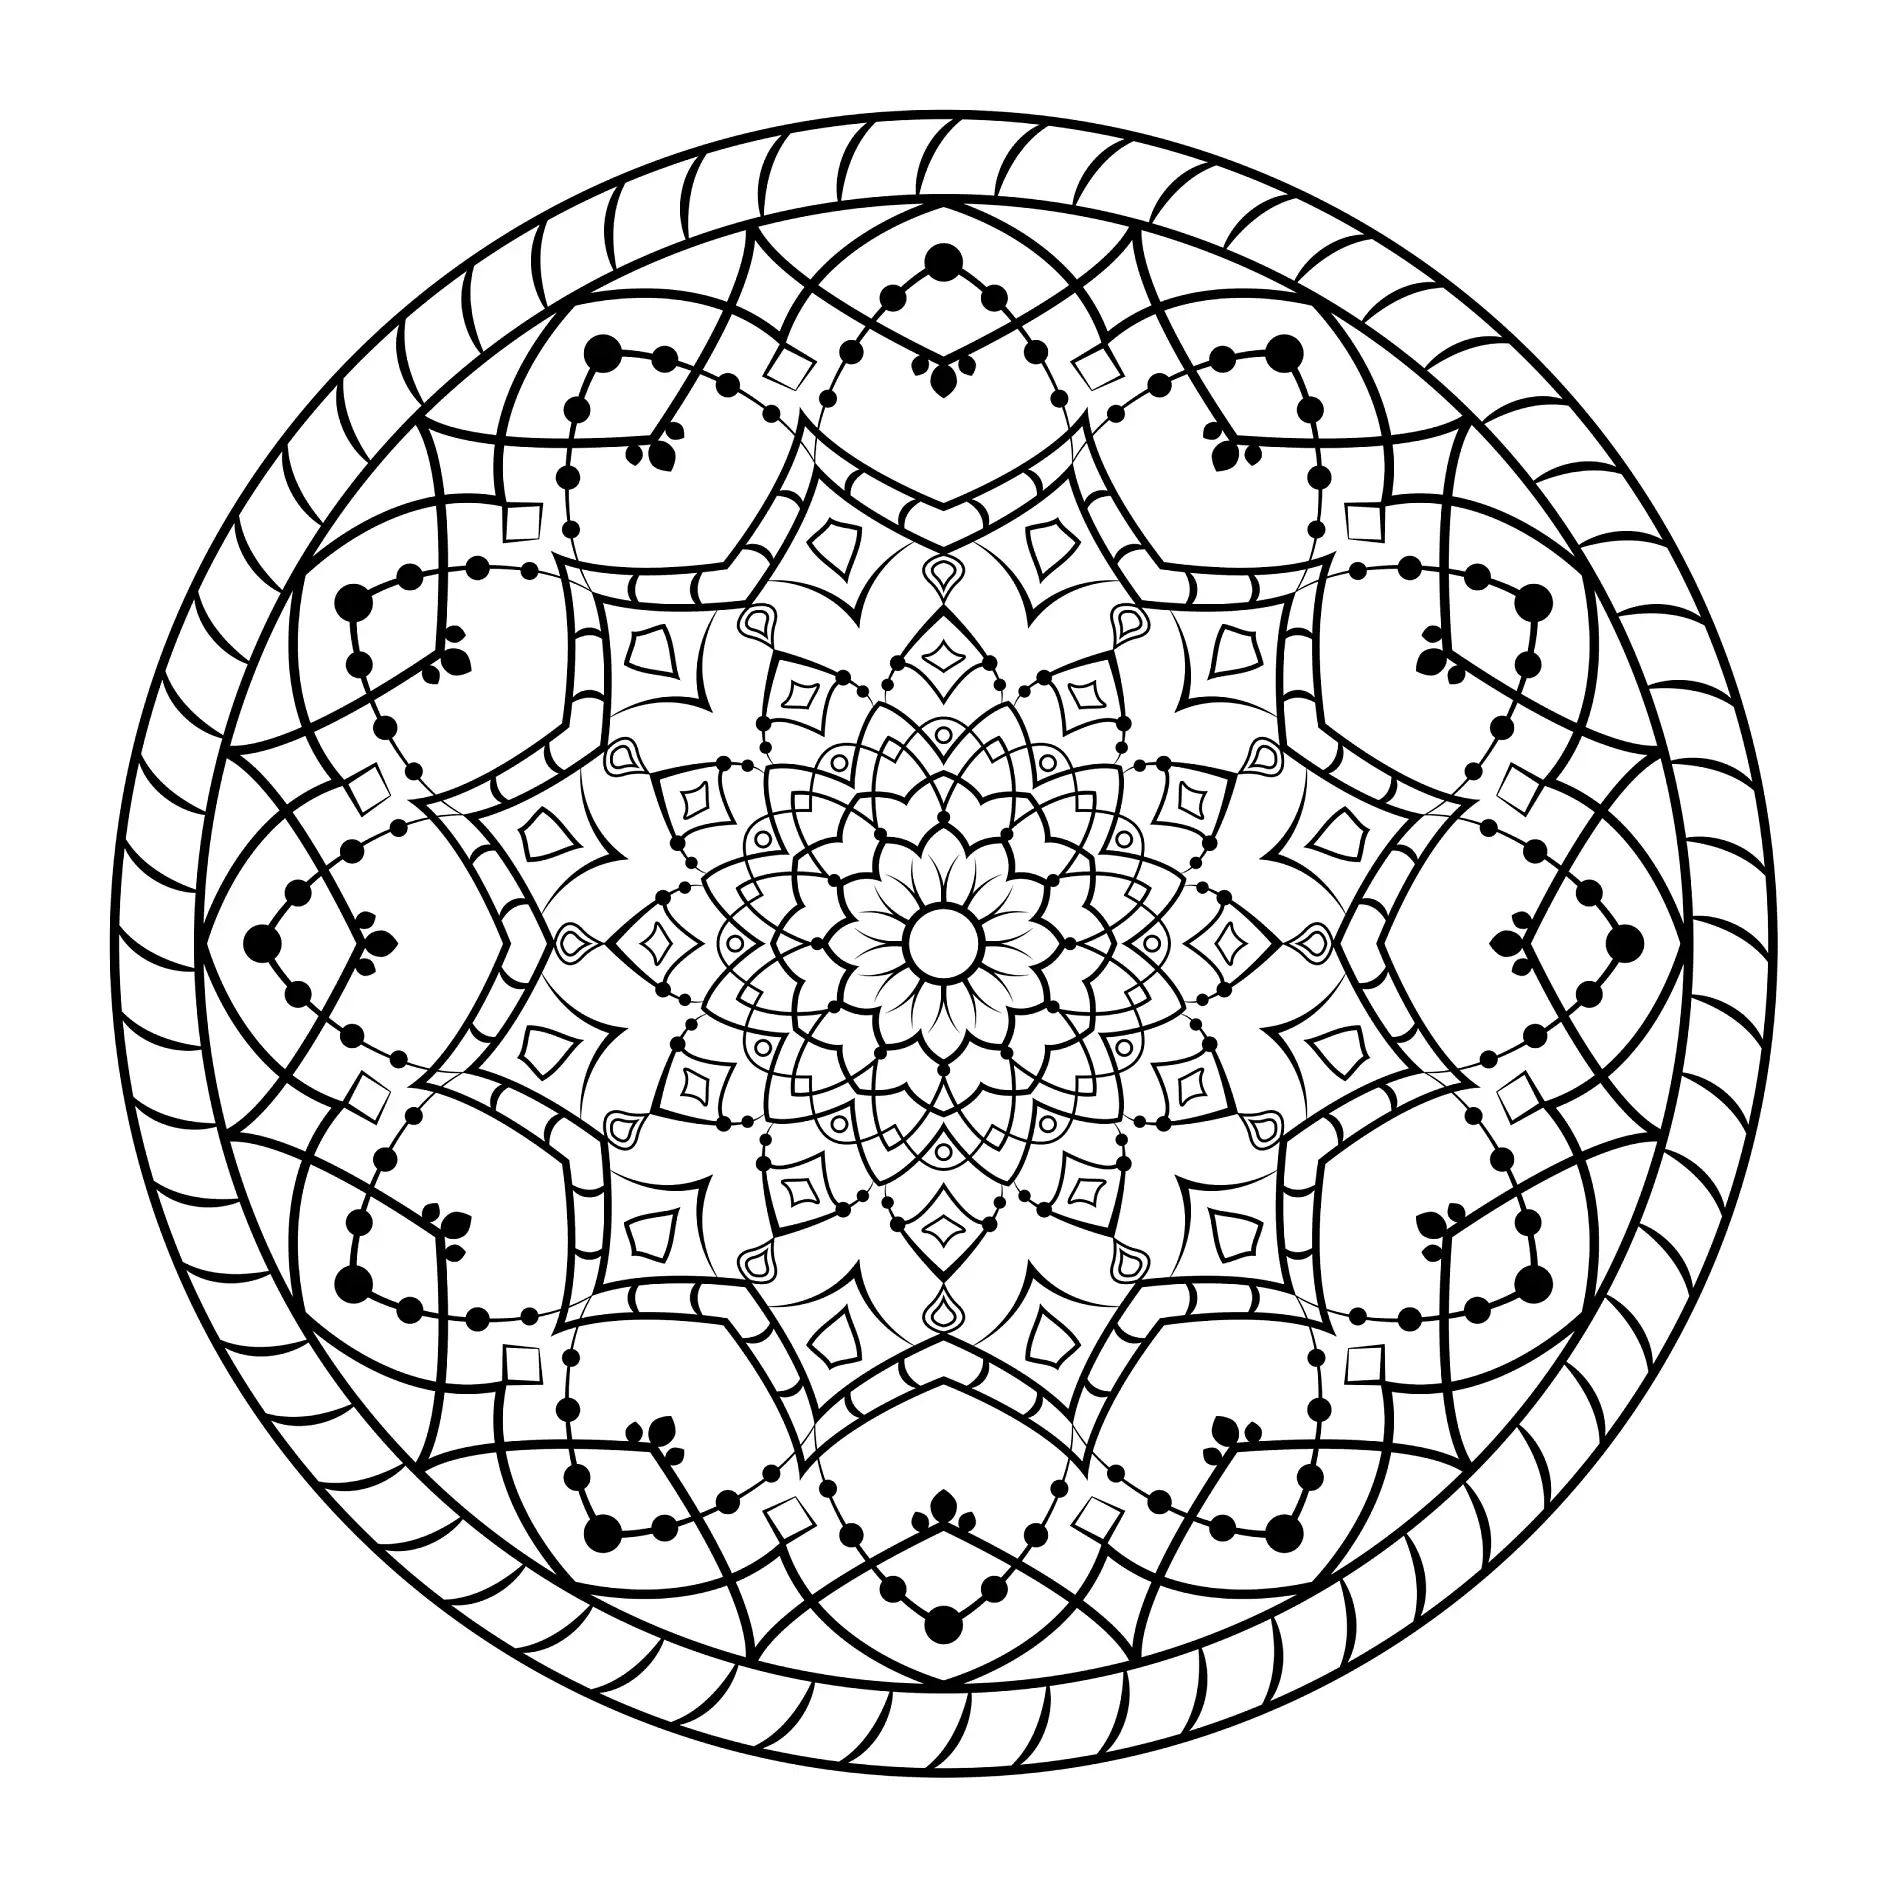 Ausmalbild Mandala mit komplexen geometrischen Mustern und Punkten